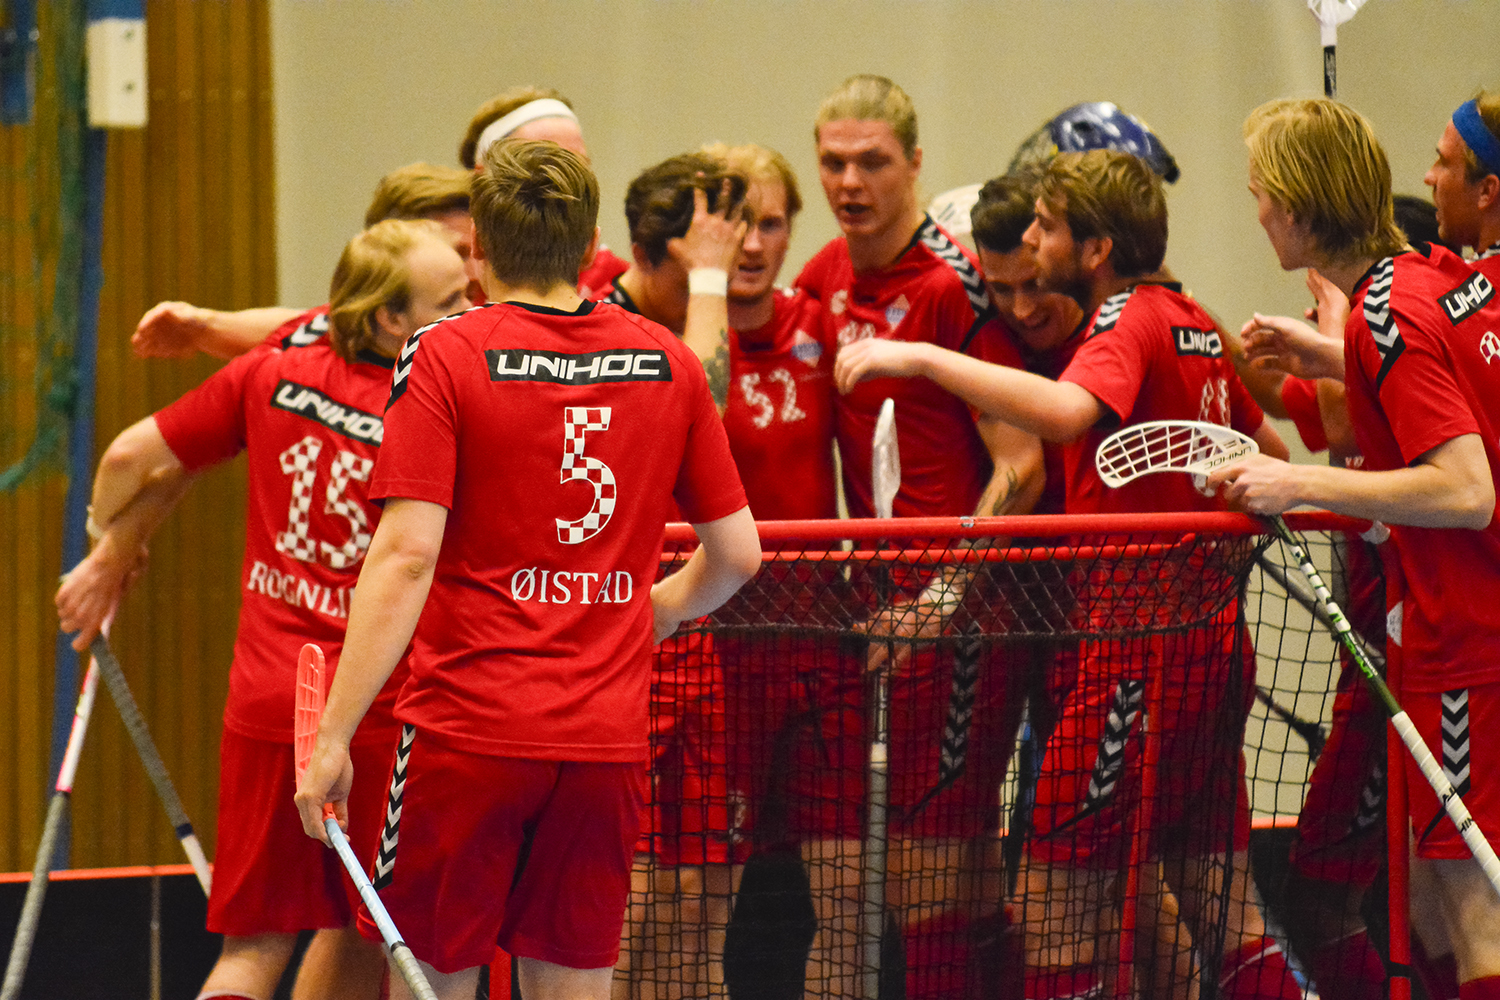 Det ble bare en kamp på vestlandet for Sveiva-herrene etter at også den tredje kvartfinalekampen endte med seier.